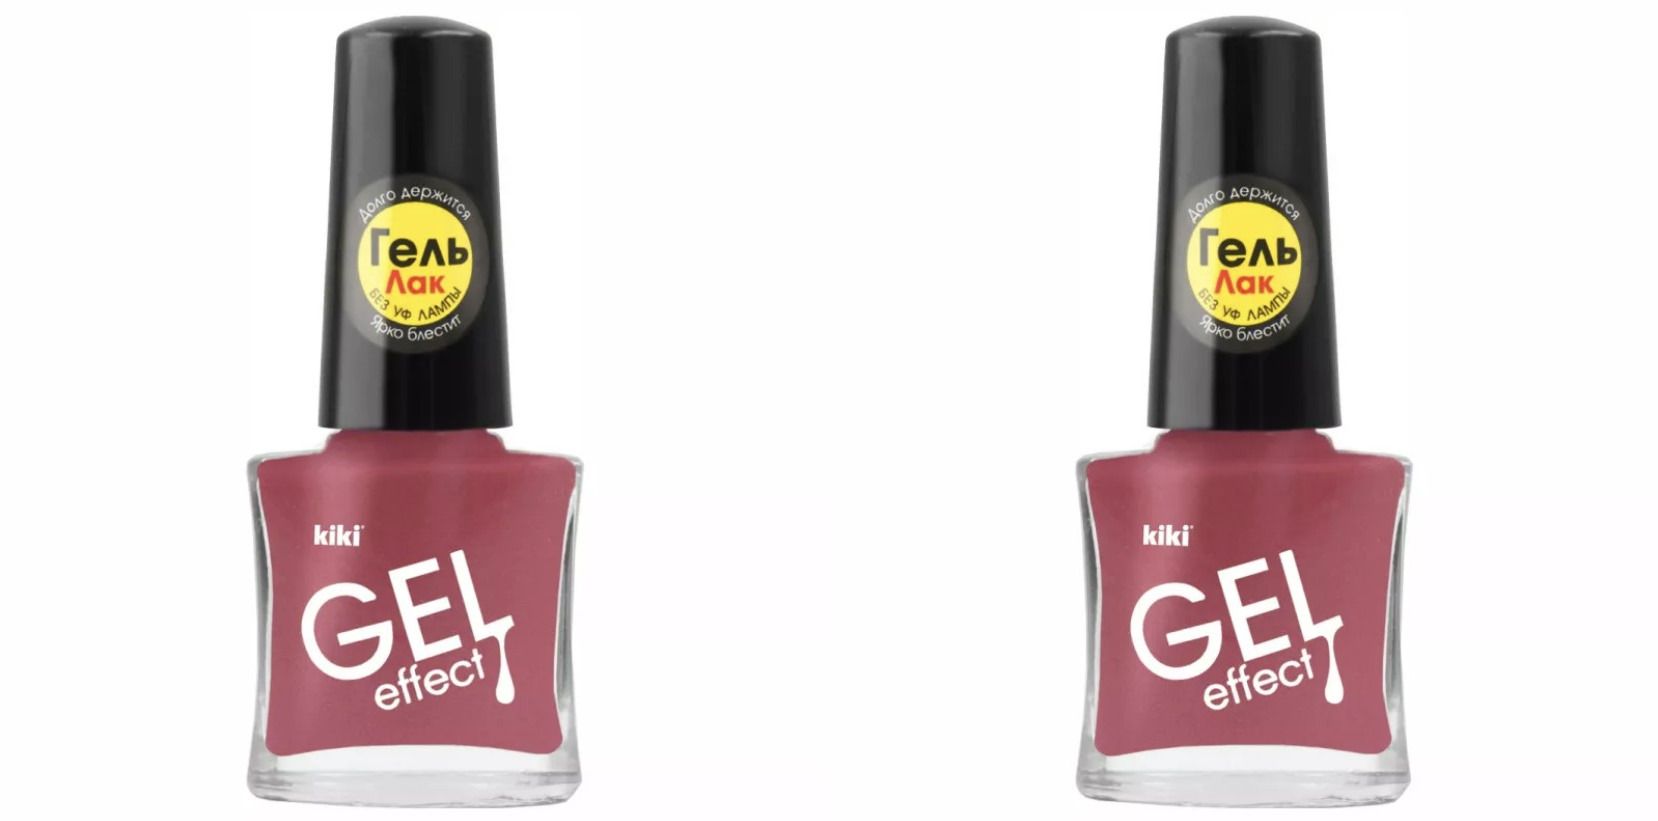 Лак для ногтей Kiki Гель эффект 070 Темно-розовый щербет, 2 шт kiki каучуковая база для ногтей прозрачная gel uv